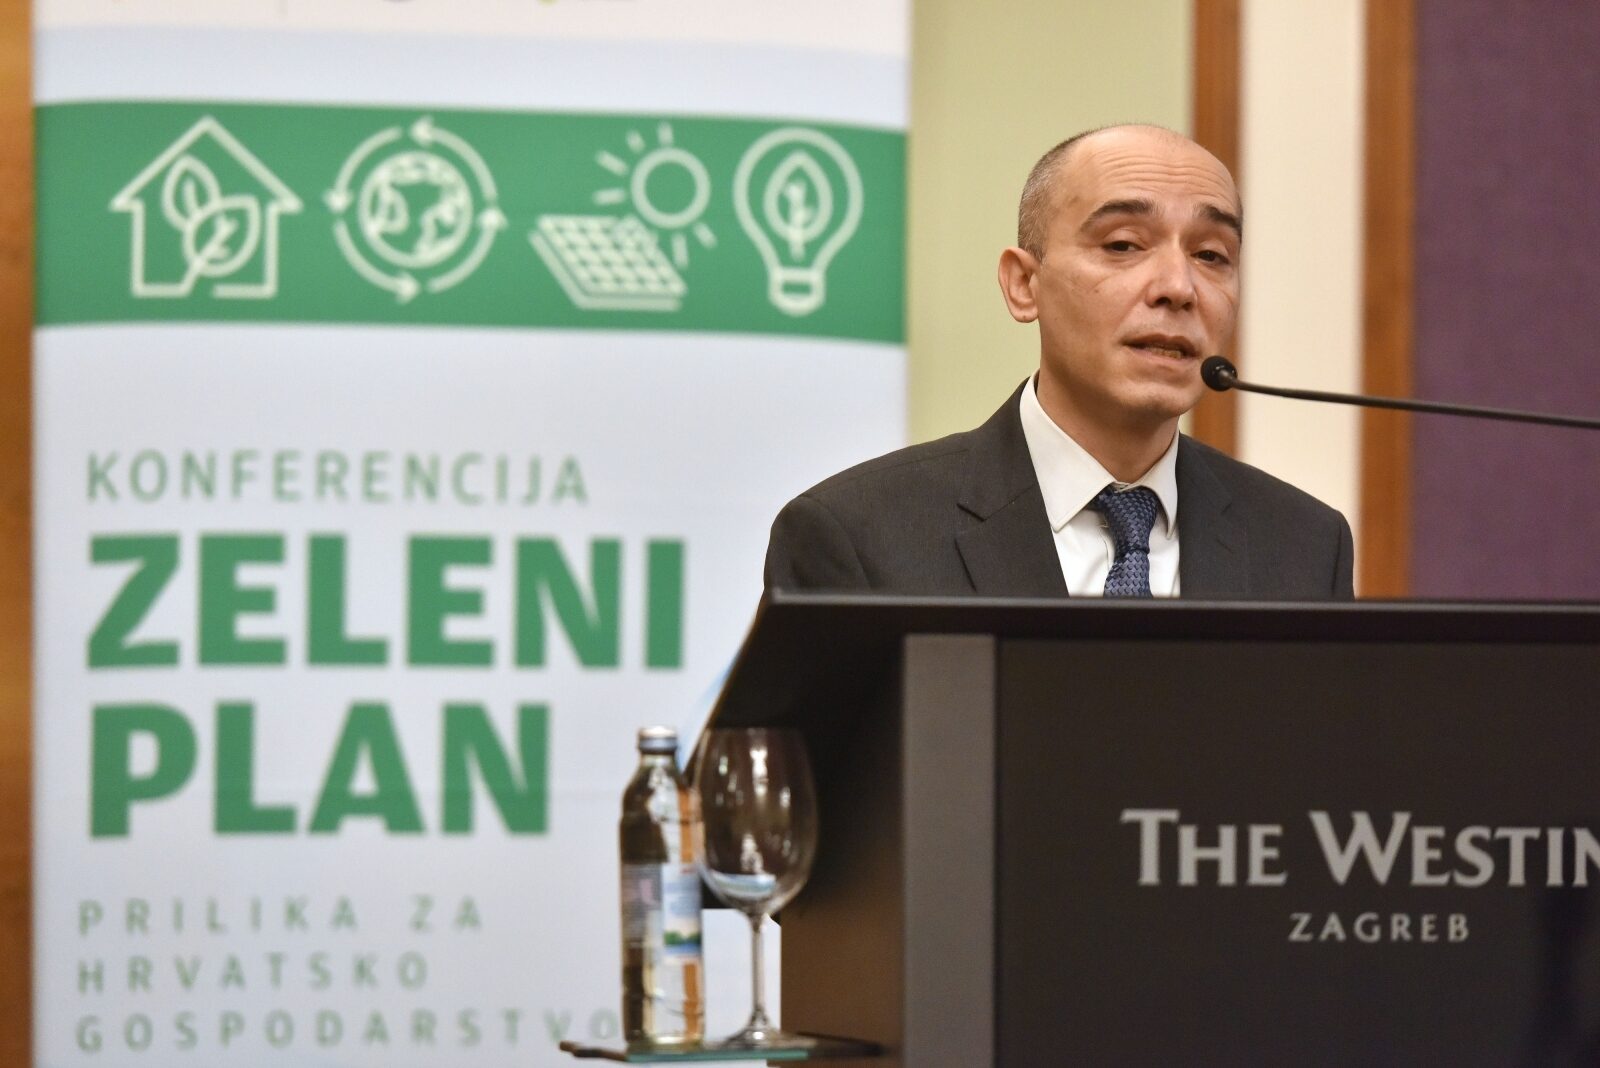 Zagreb: Konferencija Zeleni plan - prilika za Hrvatsko gospodarstvo